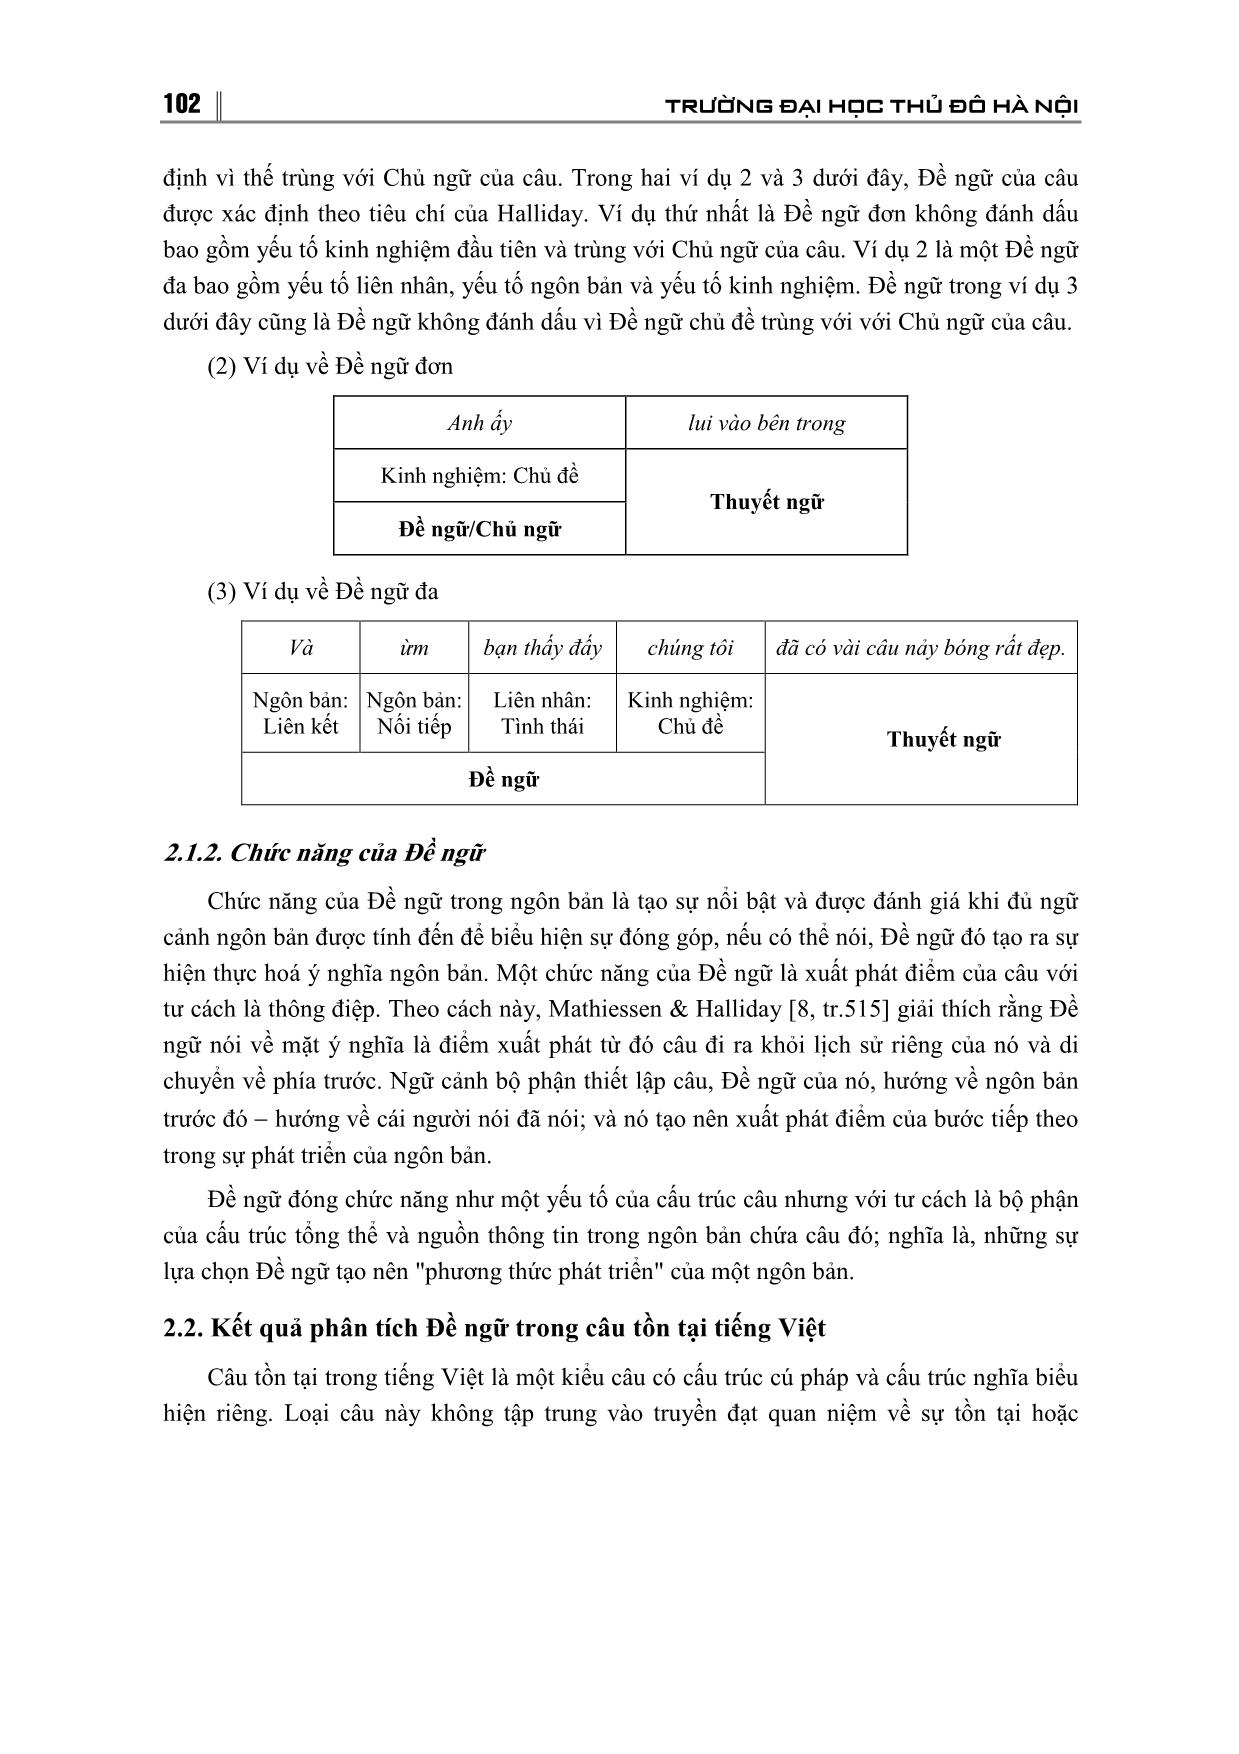 Cấu tạo và chức năng ngôn bản của đề ngữ trong câu tồn tại Tiếng Việt trang 3